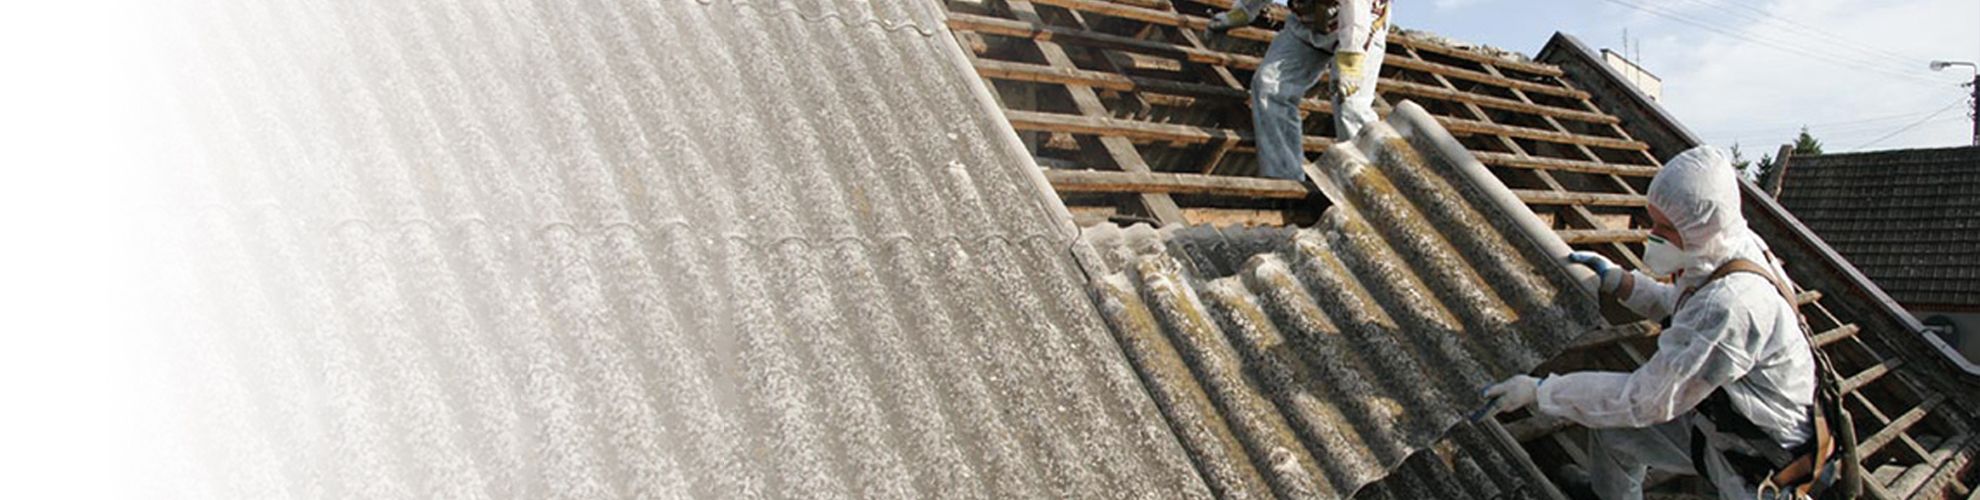 Widok na pracowników demontujących azbest na dachu